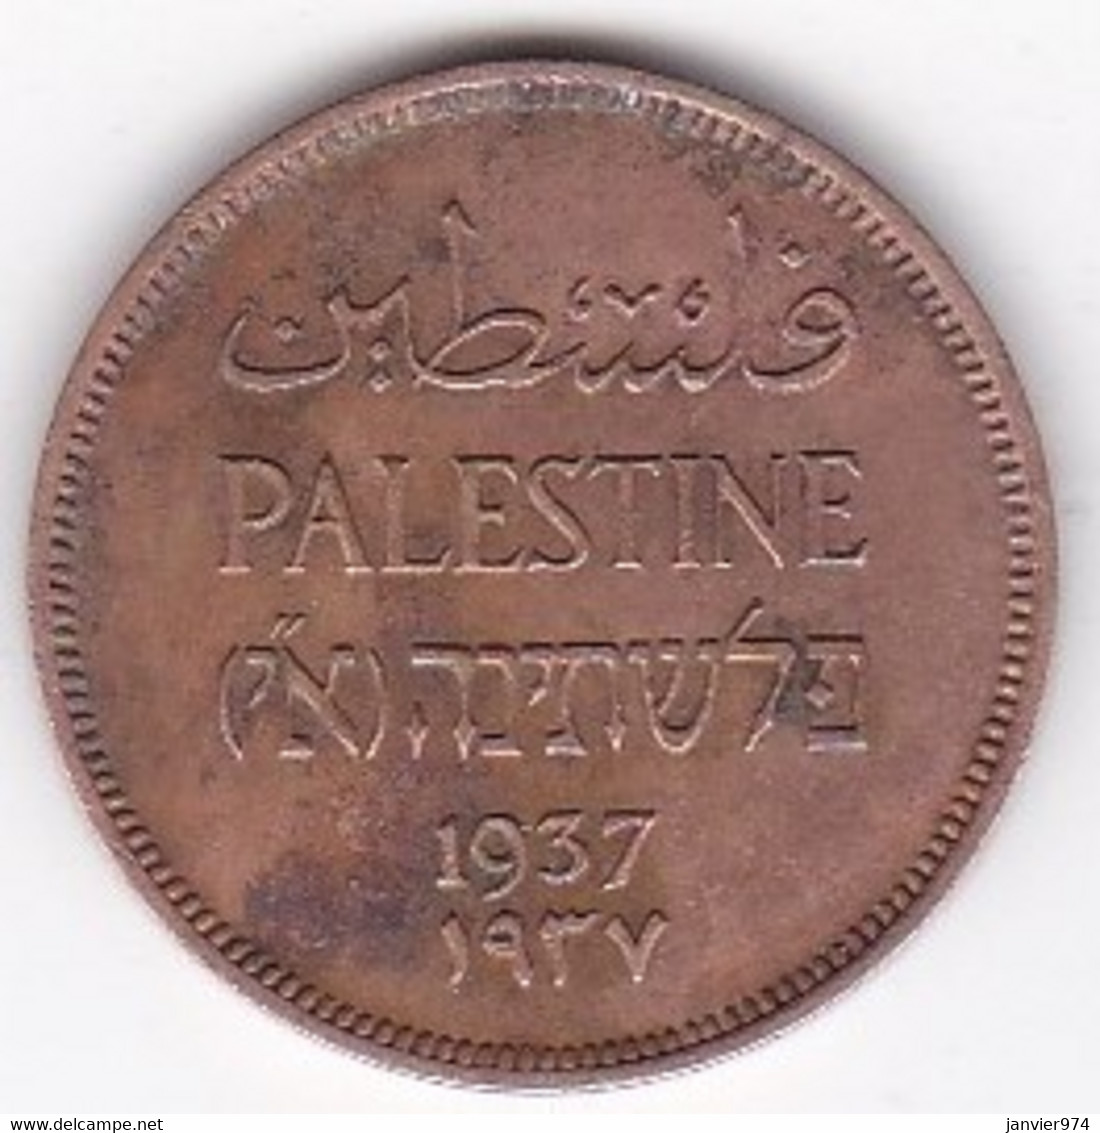 Palestine 1 Mil 1937 , En Bronze , KM# 1 - Israel